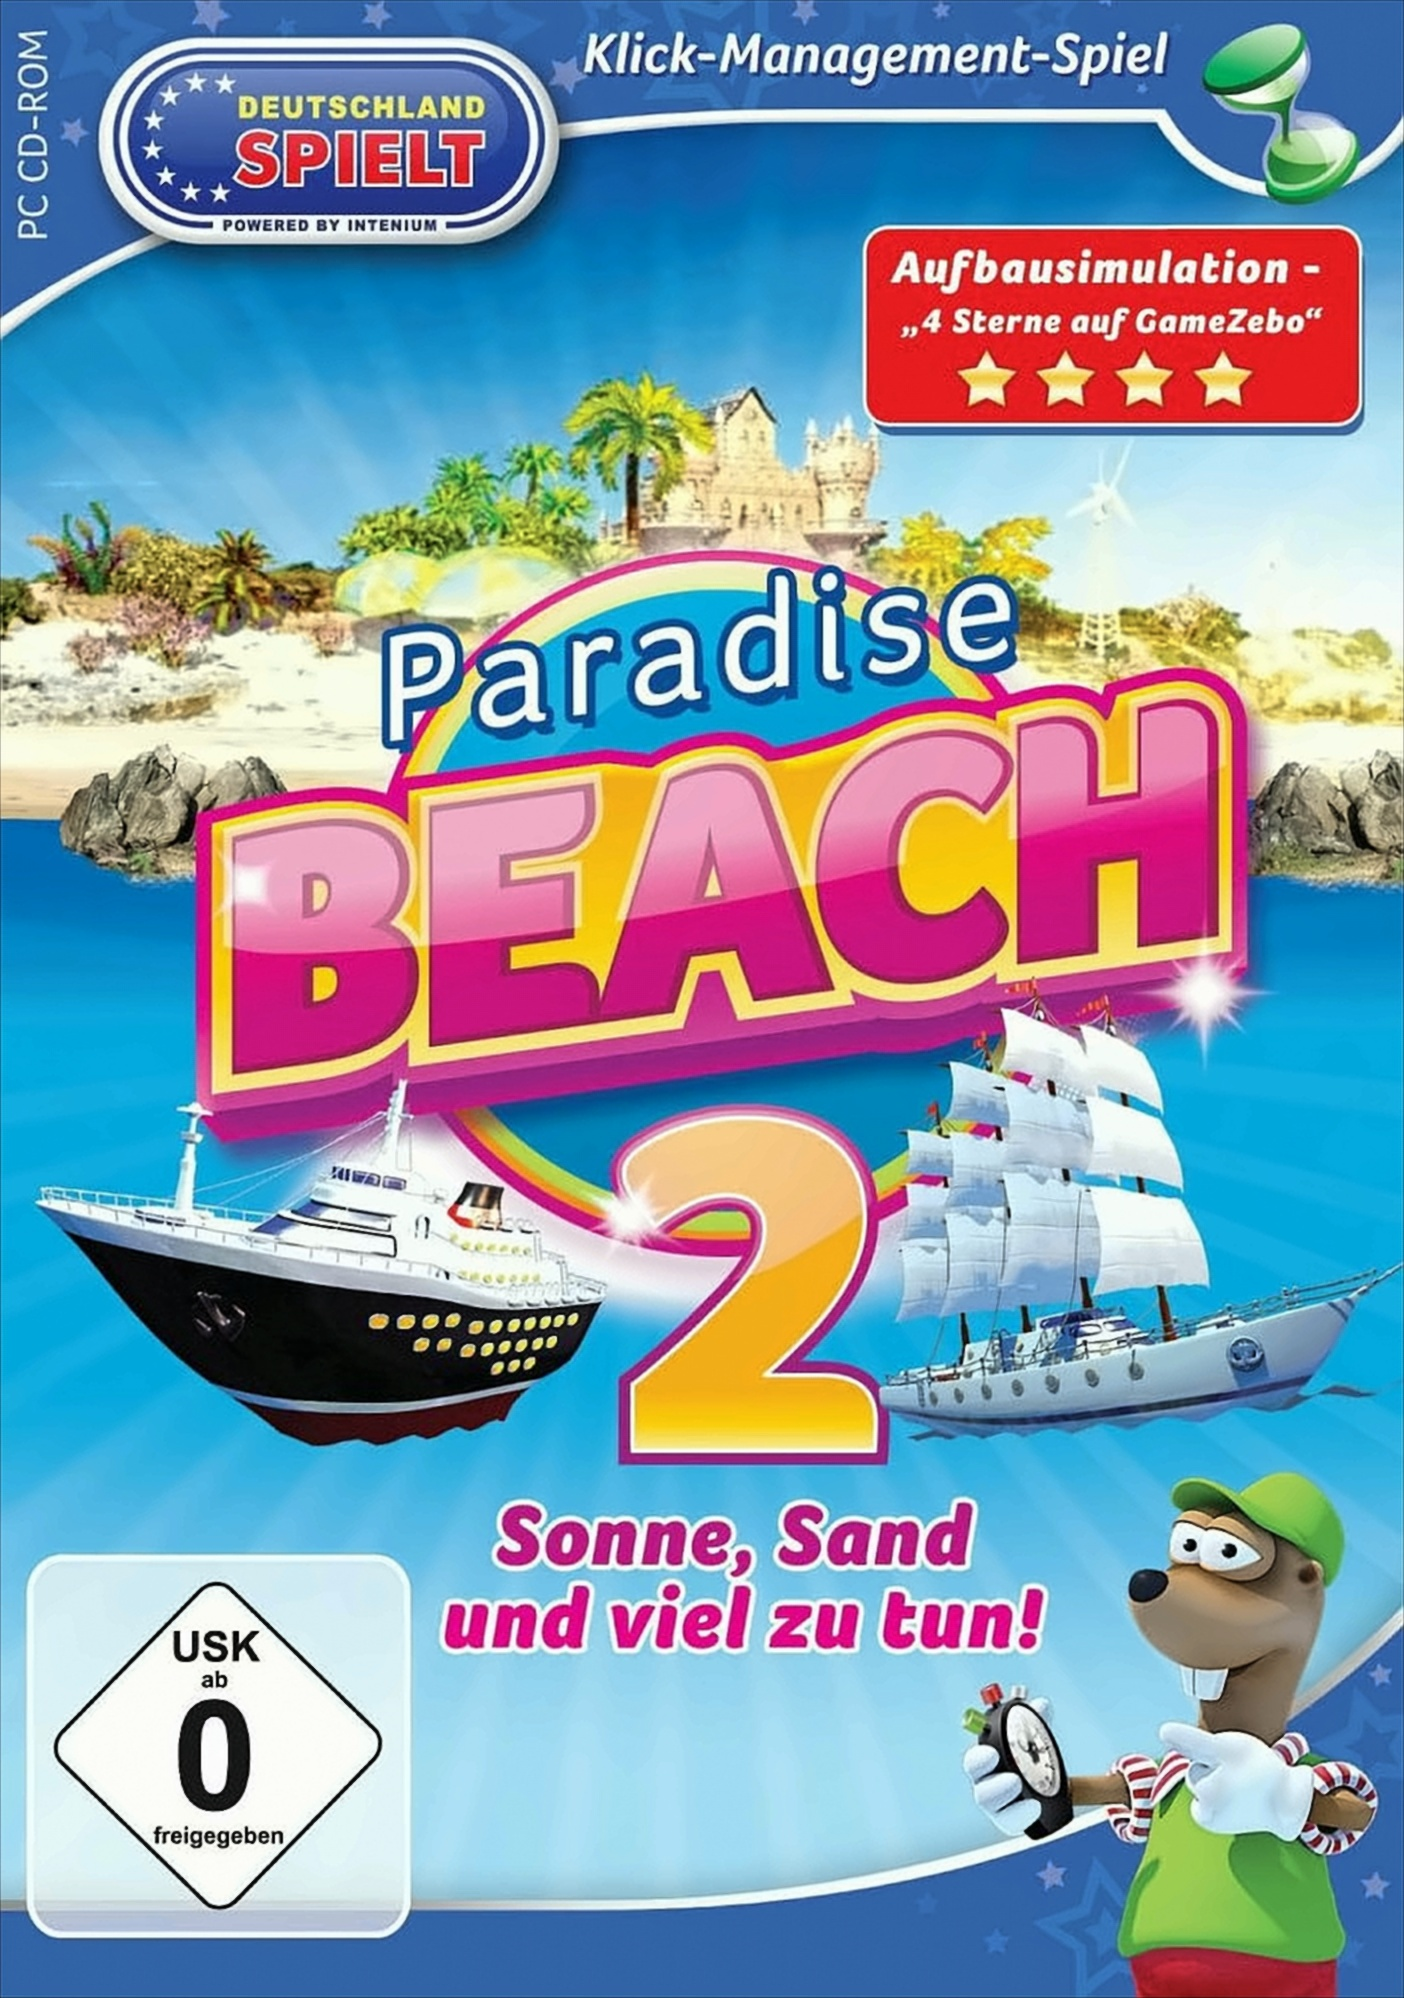 Paradise Beach 2 - Sonne, tun! - Sand und viel zu [PC